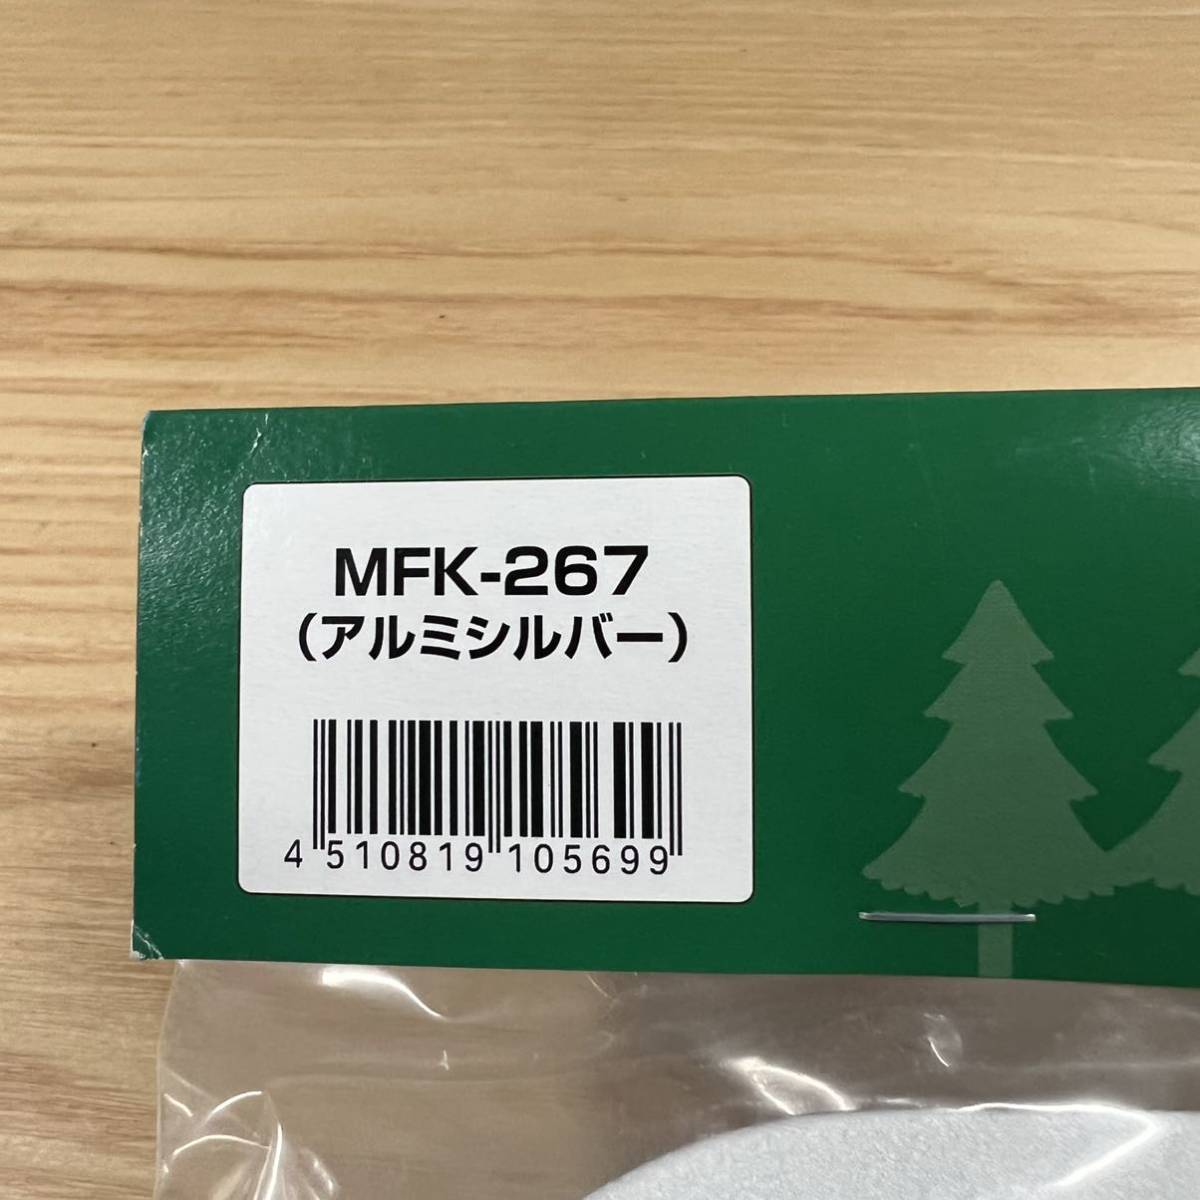 未使用品 Tanax Fizzツアーシェルケース Mfk 267 Moto オプションテーブル タナックス 3年保証 タナックス